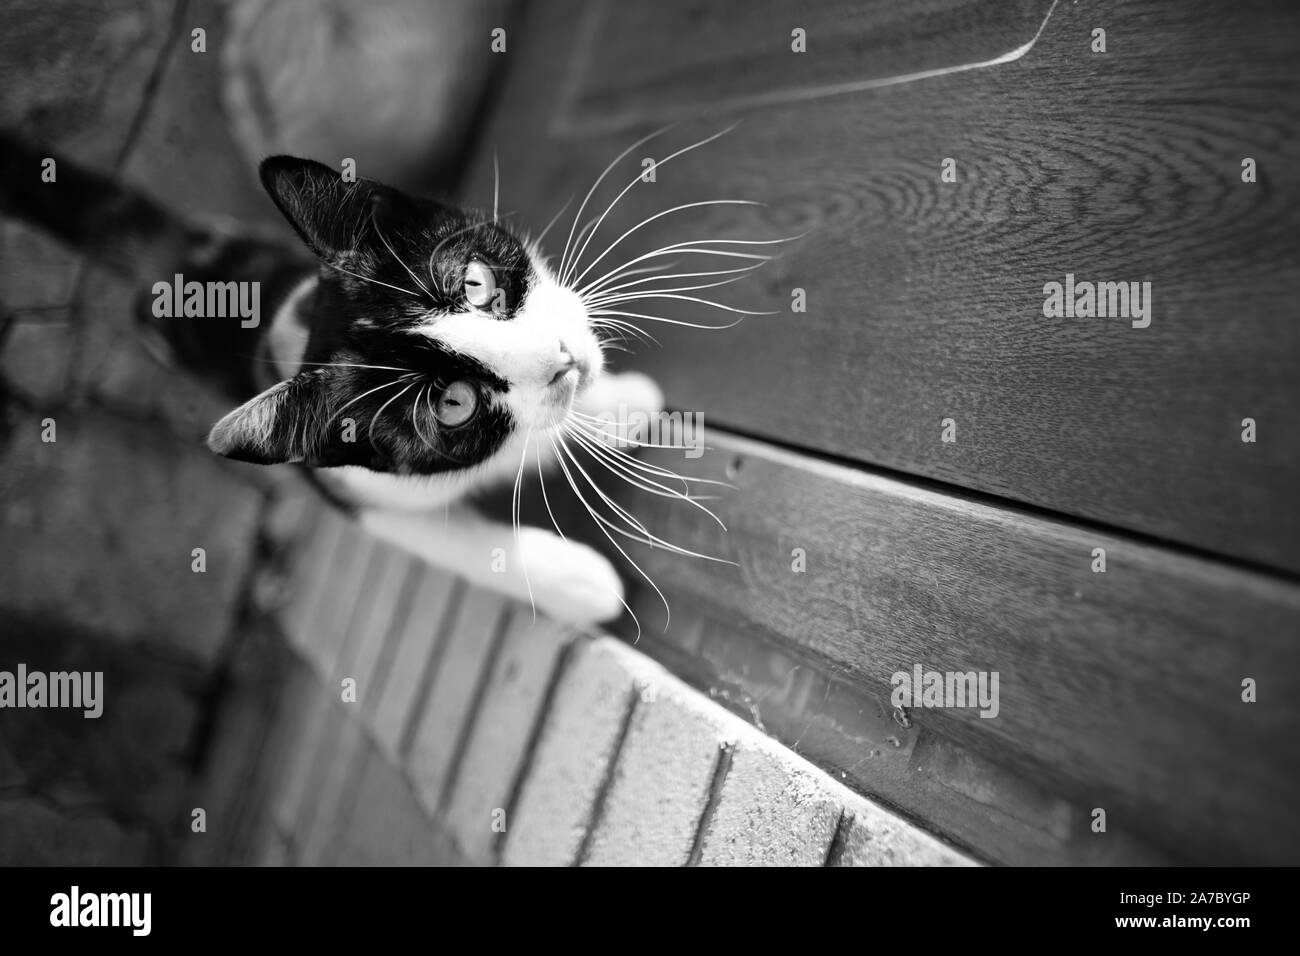 Gatto tricolore sulla soglia di casa vuole entrare in casa. Maneki Neko kitty ritratto con zampe sullo sportello. Foto in bianco e nero. Foto Stock